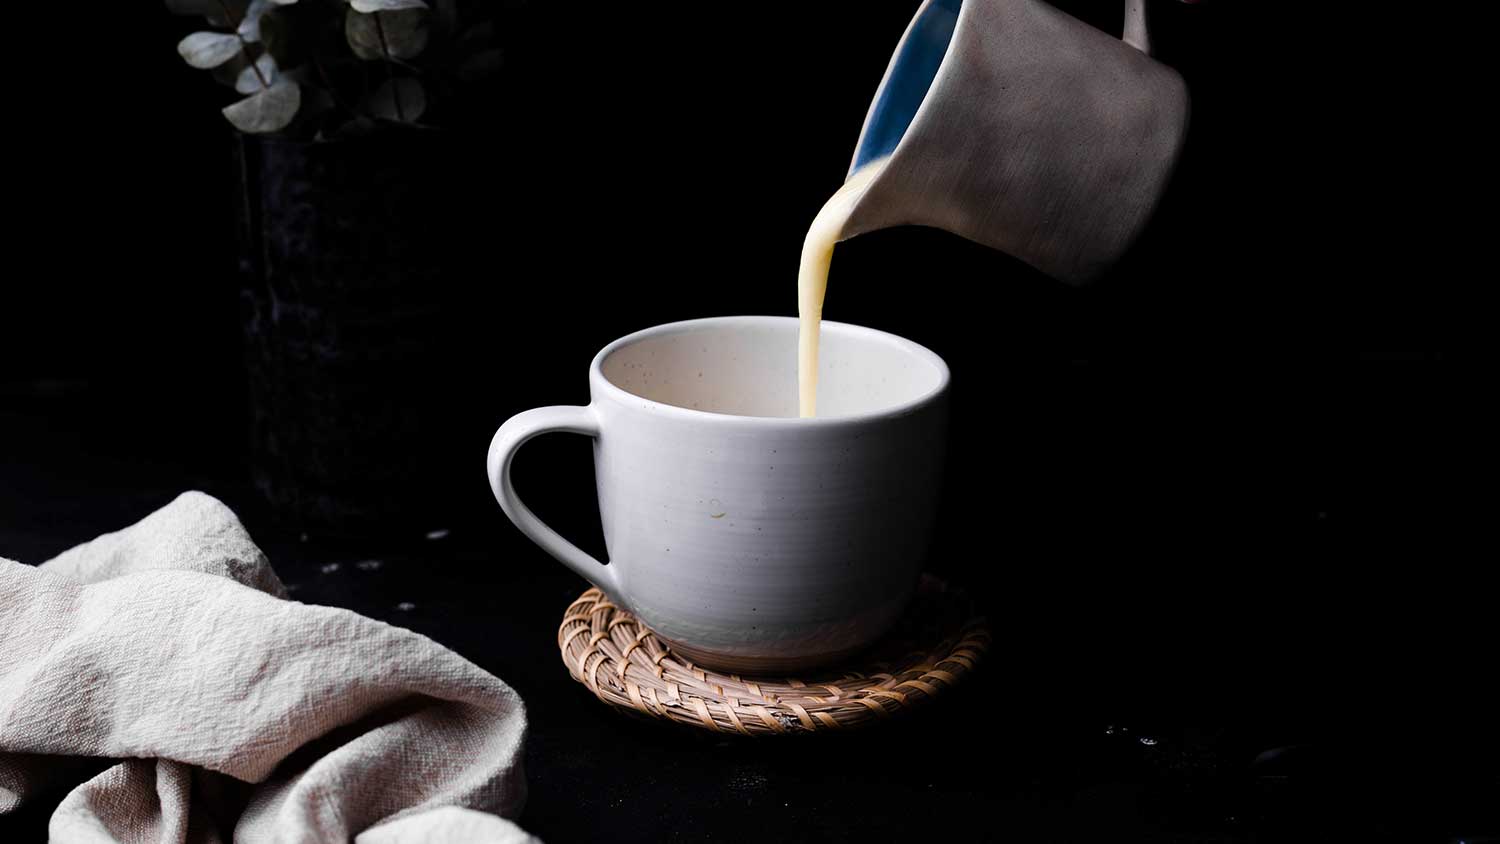 Hemp cream pouring into mug